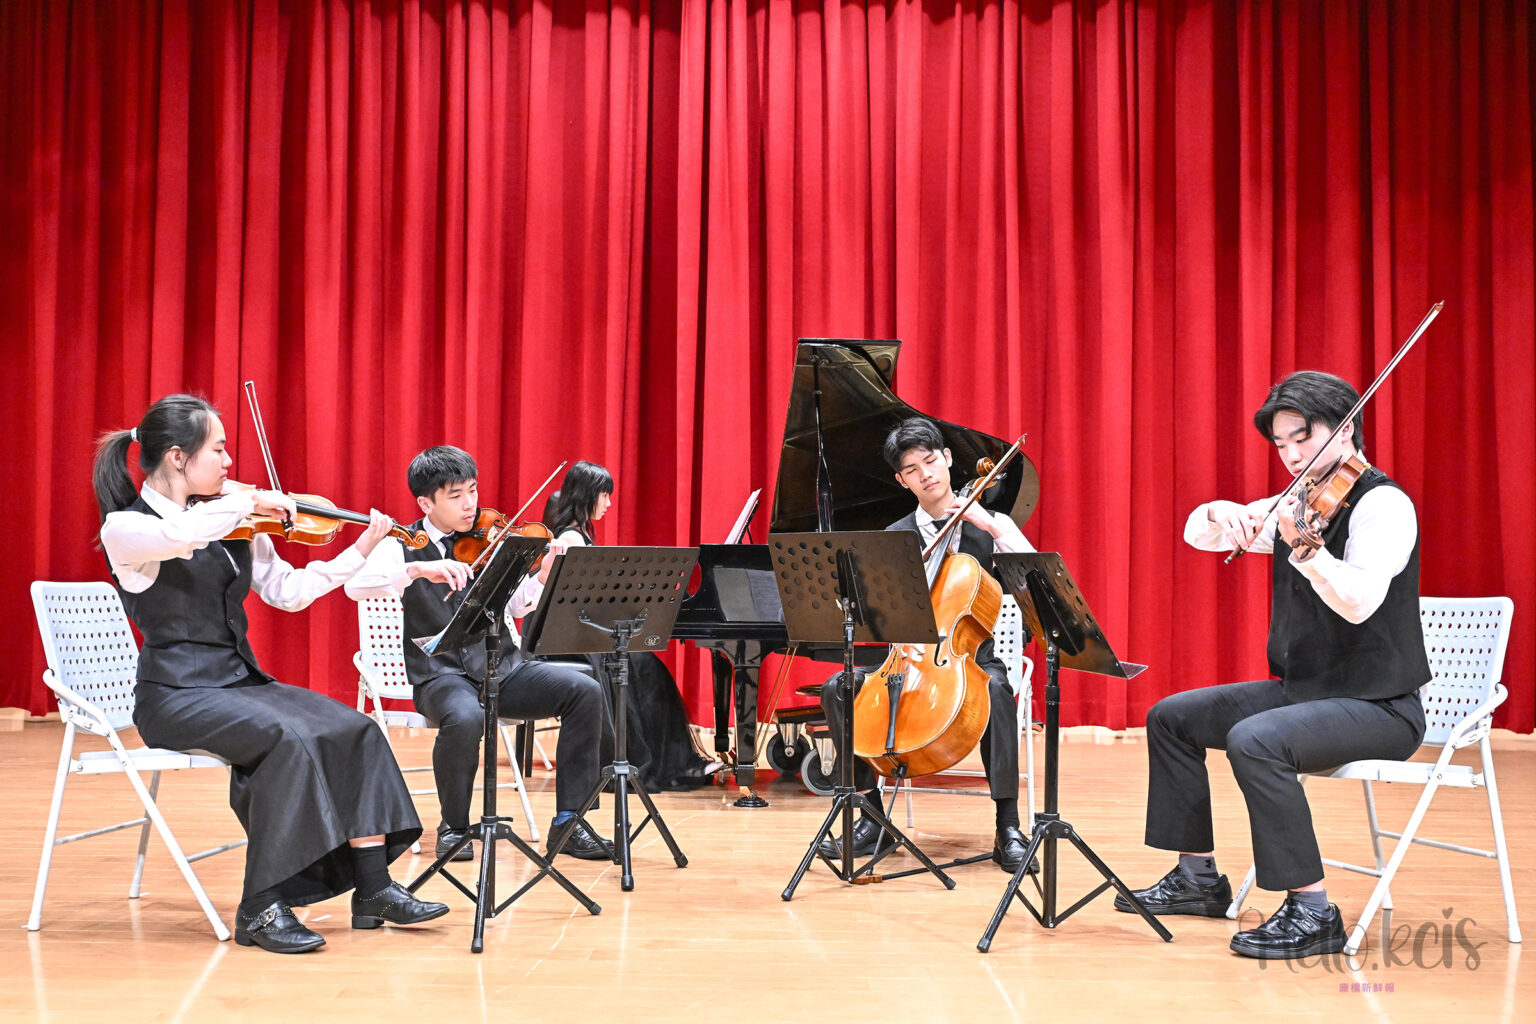 康橋秀岡校區高中鋼琴五重奏揭開表演序幕，演奏杜南伊的C小調第一號鋼琴五重奏的第三樂章，完美展現精湛技藝和音樂素養。